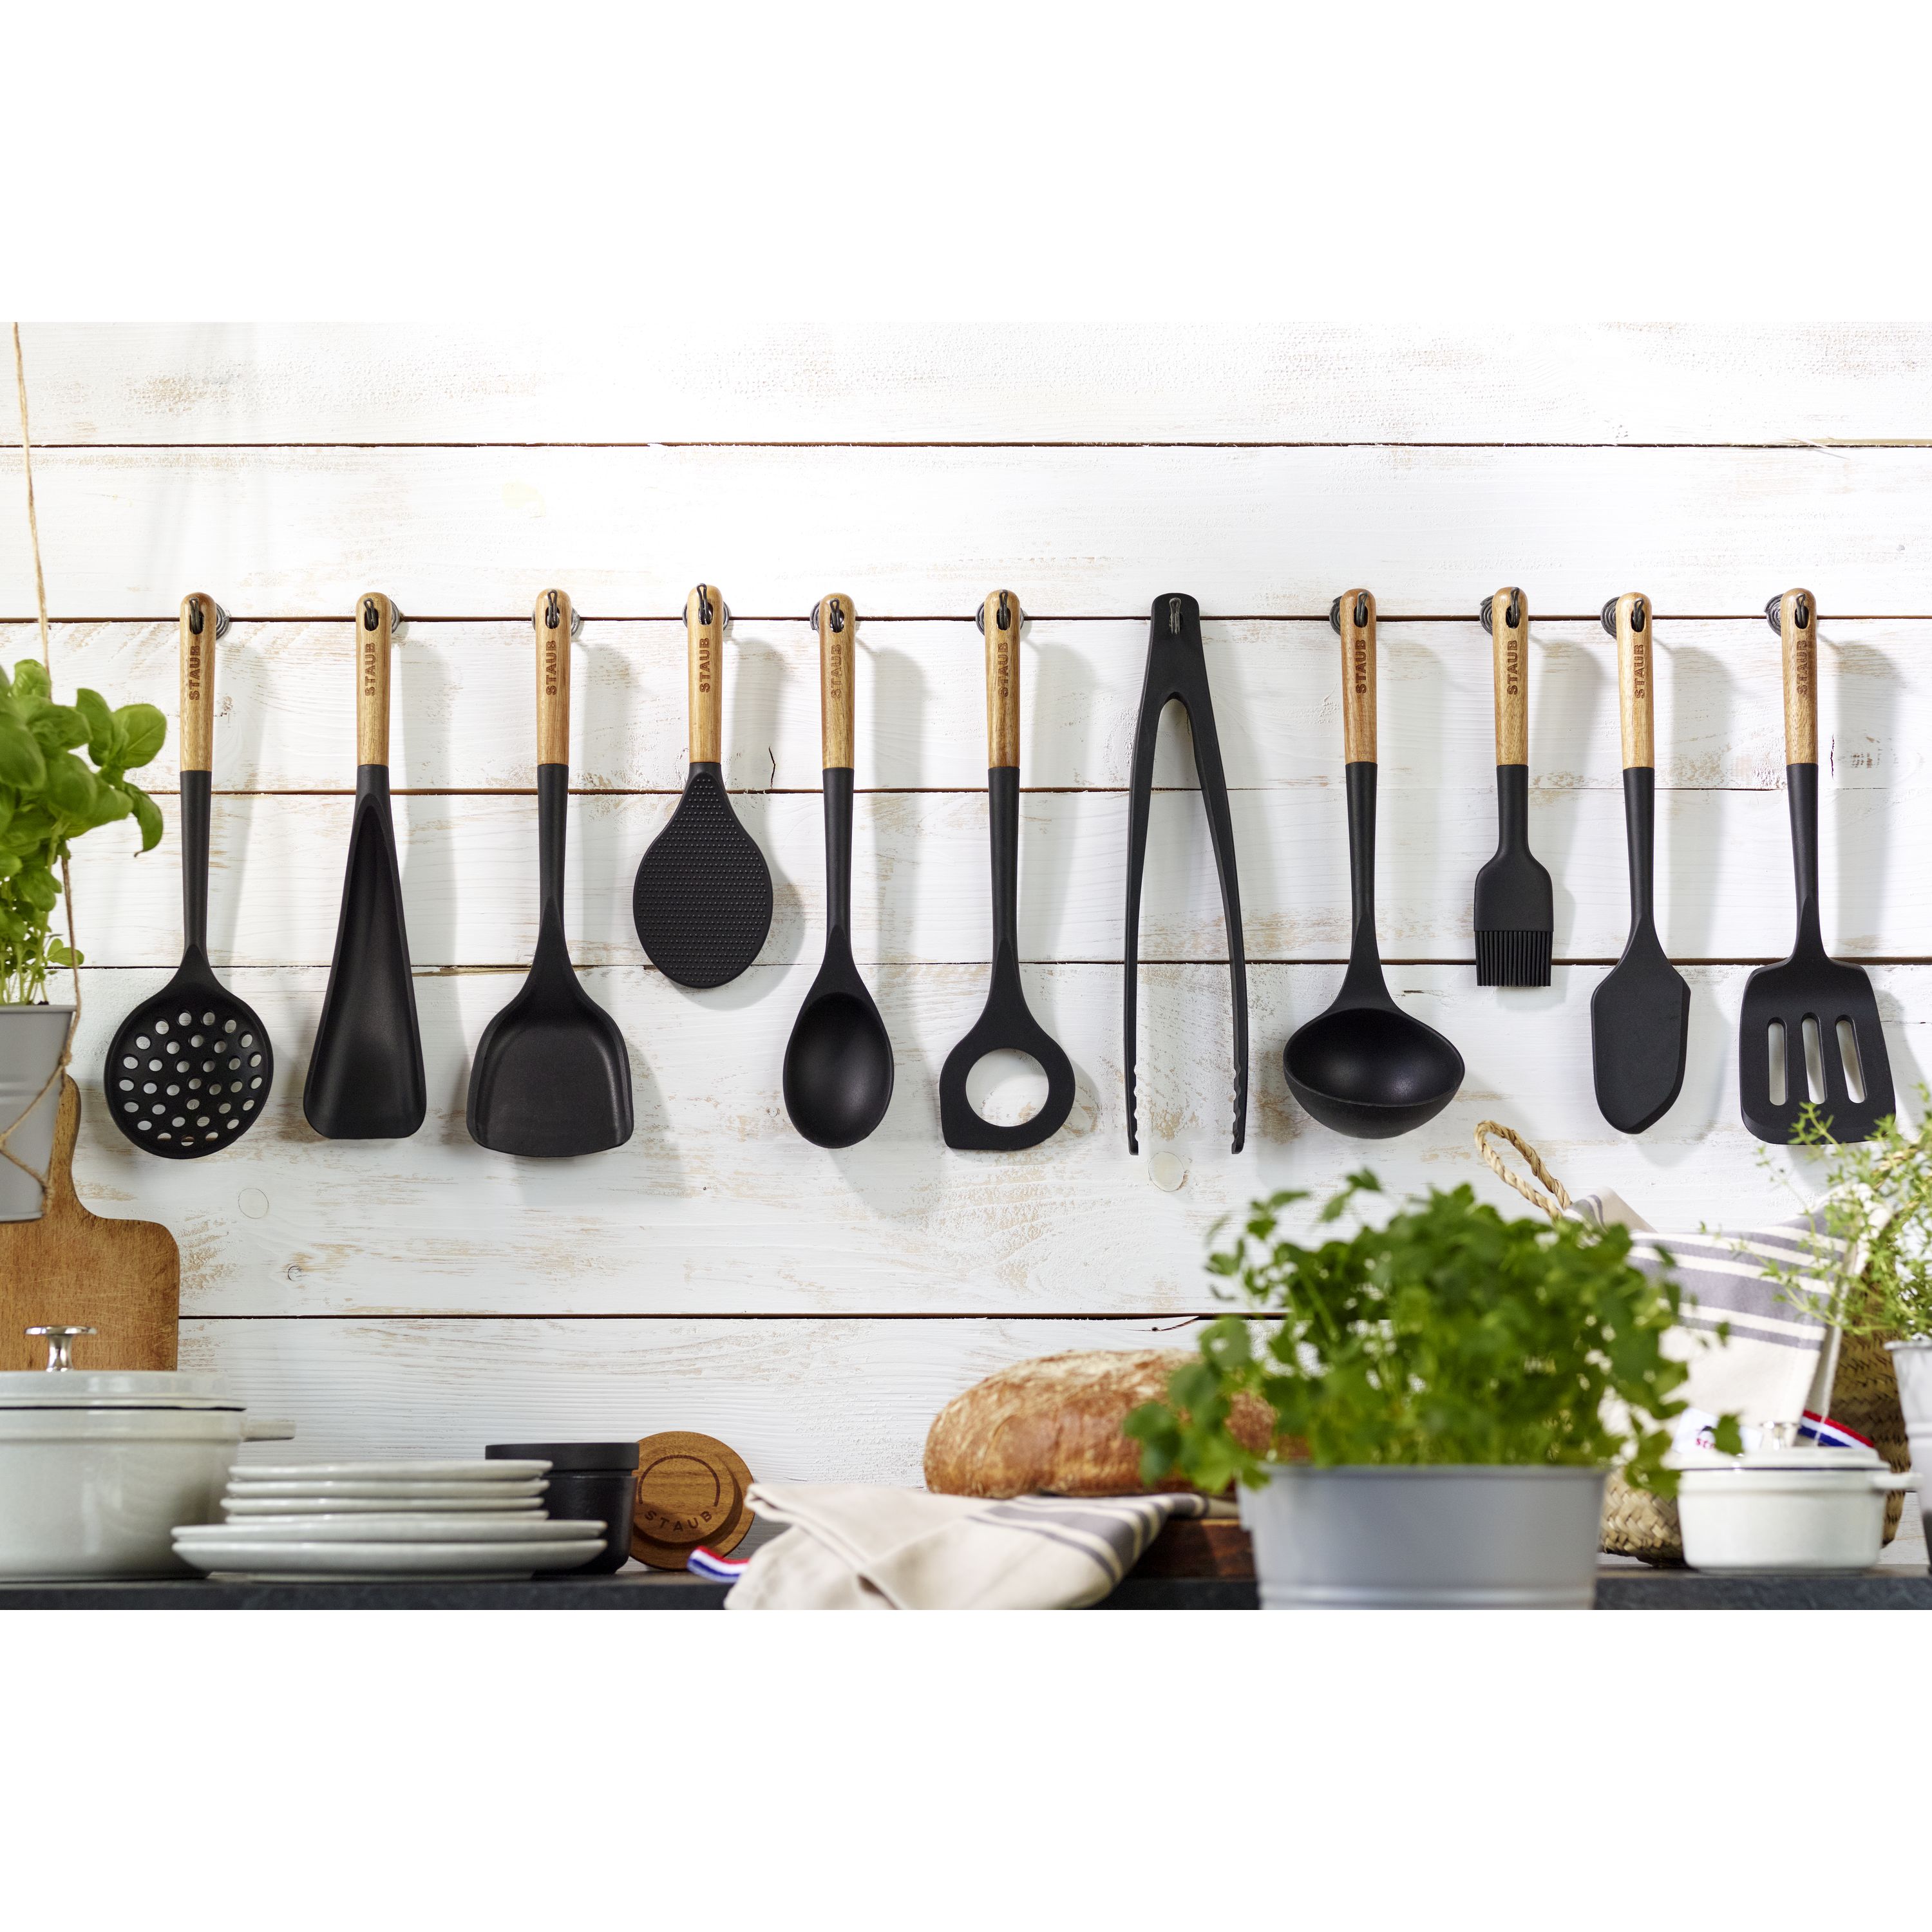 Staub Wok Tool – The Kitchen